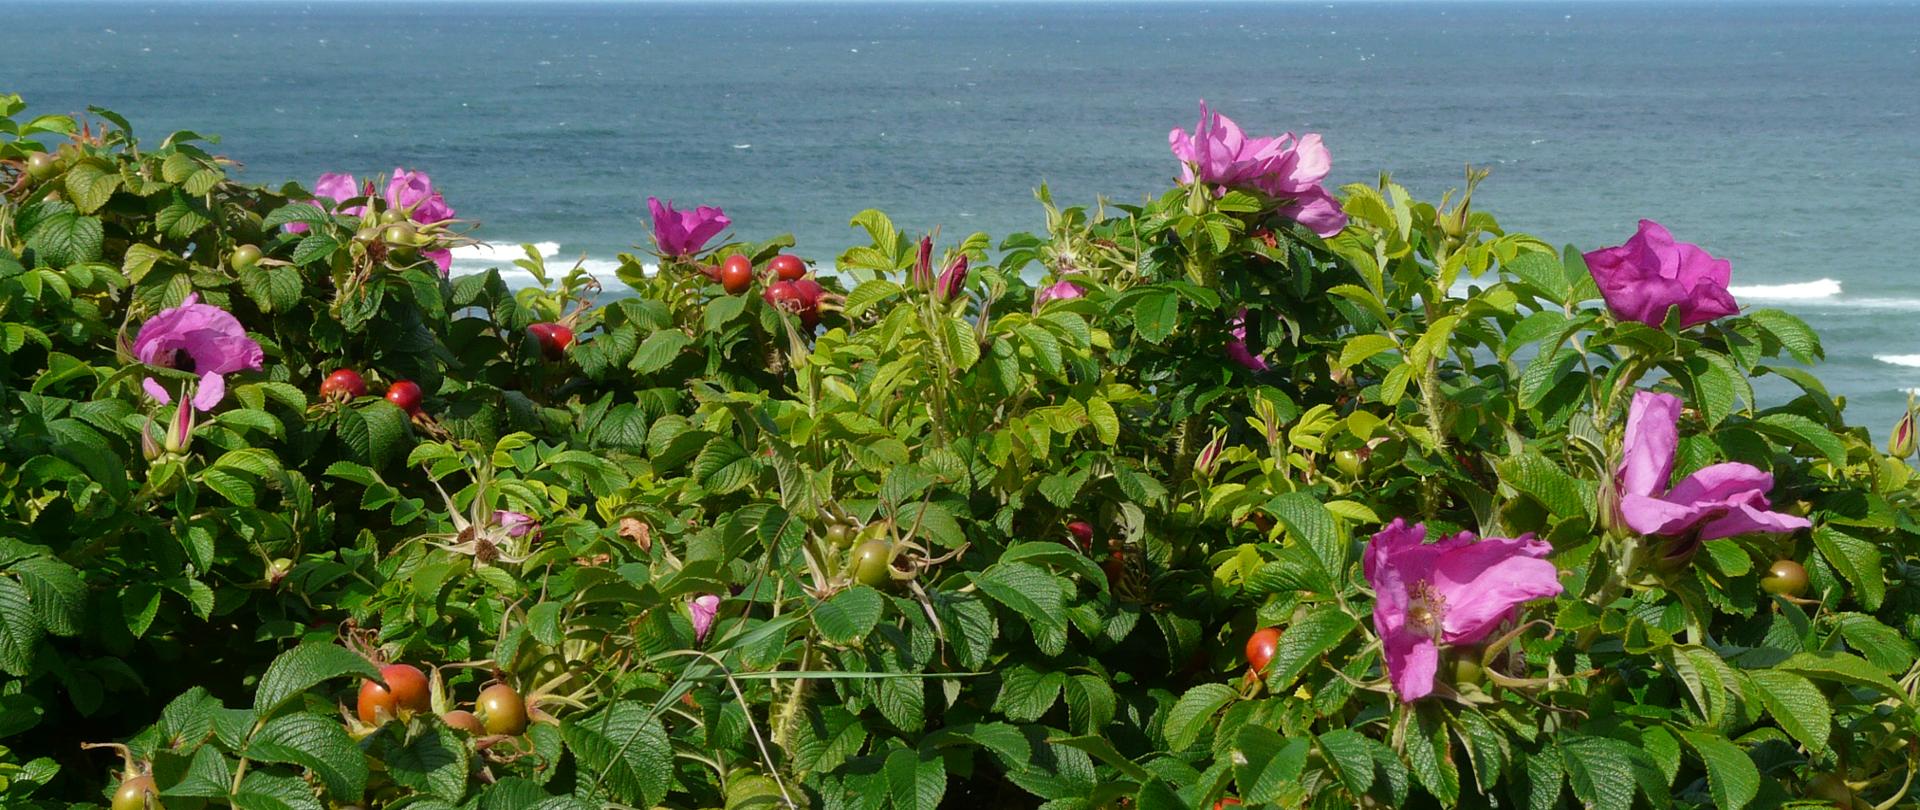 Na tle morza rośnie róża pomarszczona o różowych kwiatach.